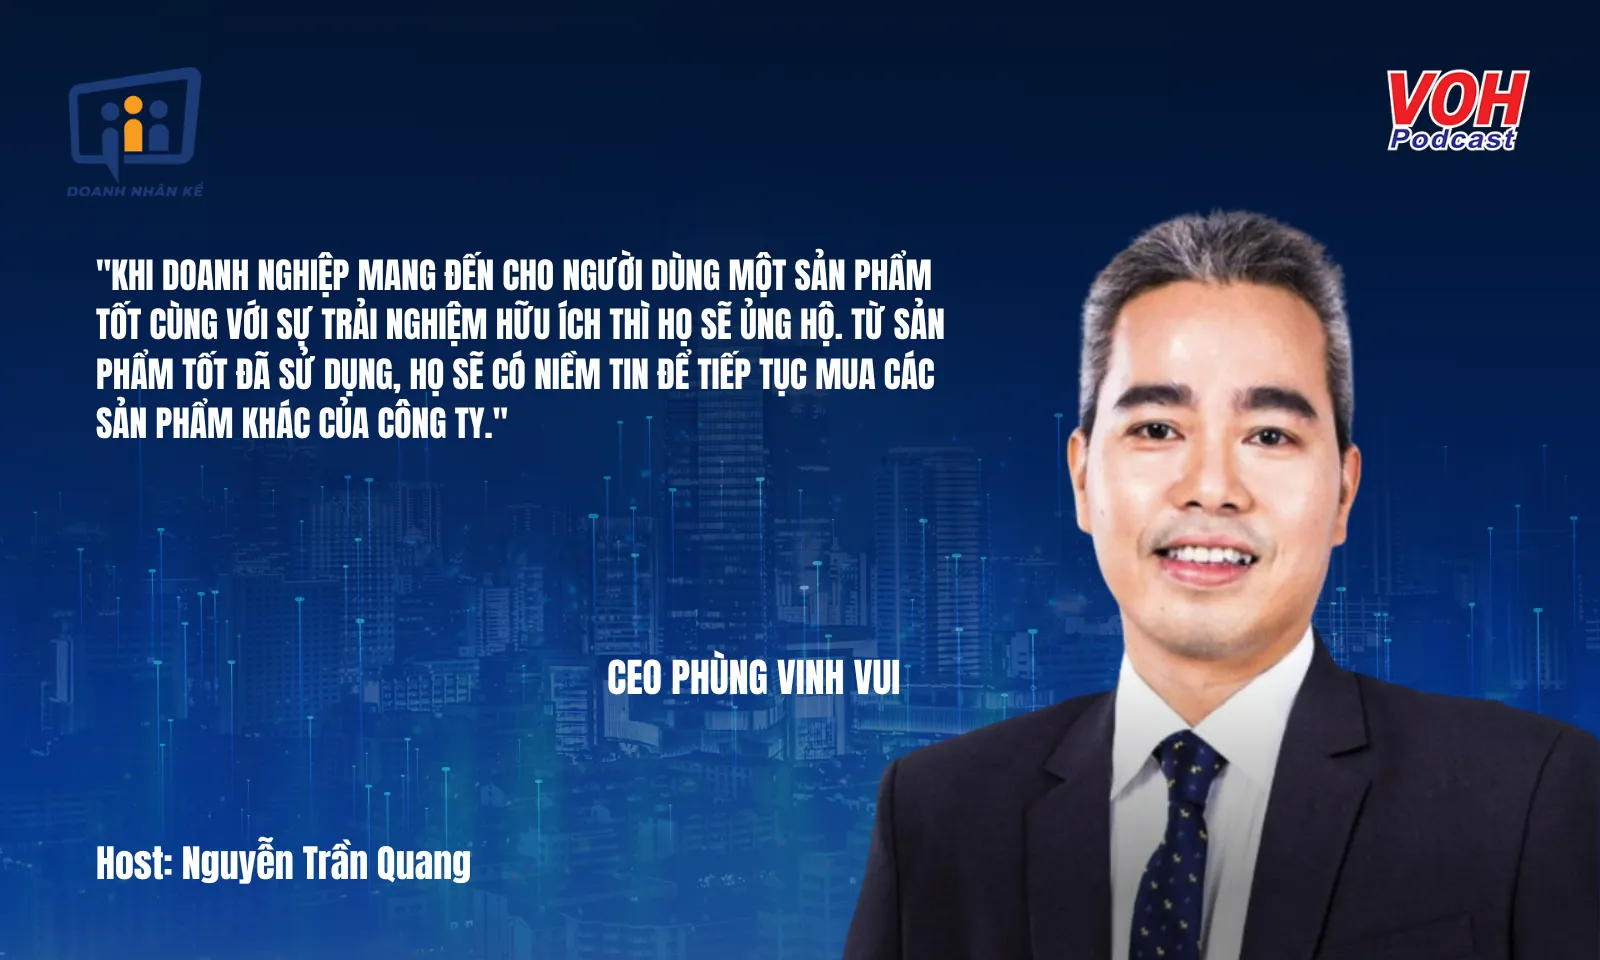 CEO Phùng Vinh Vui: Từ 